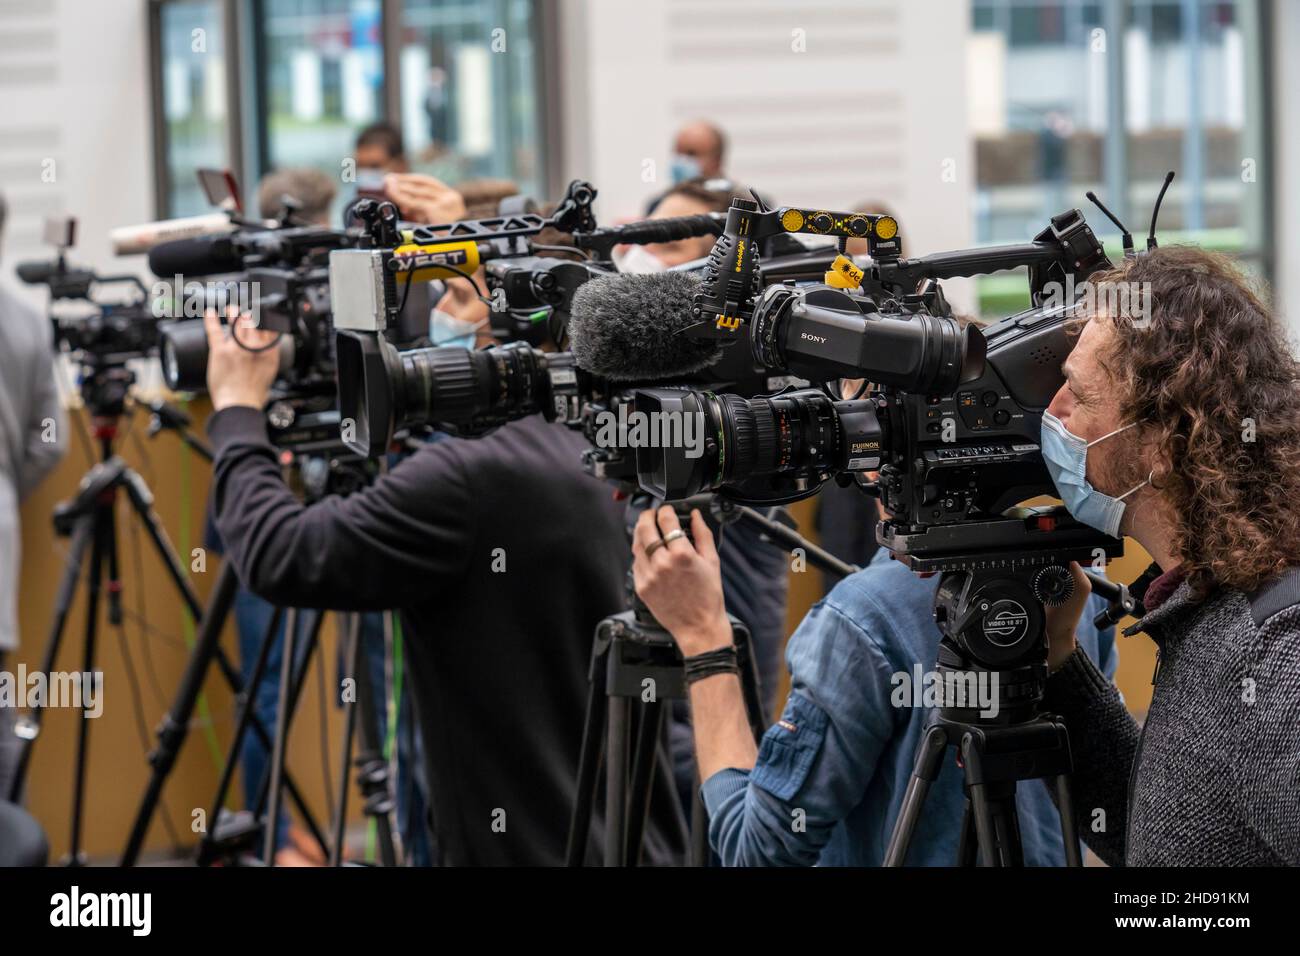 Medien, Kameras verschiedener Sender bei einer Pressekonferenz, zur Corona-Zeit, Kameraleute mit Mund-Nase-Schutzmaske, Deutschland Stockfoto